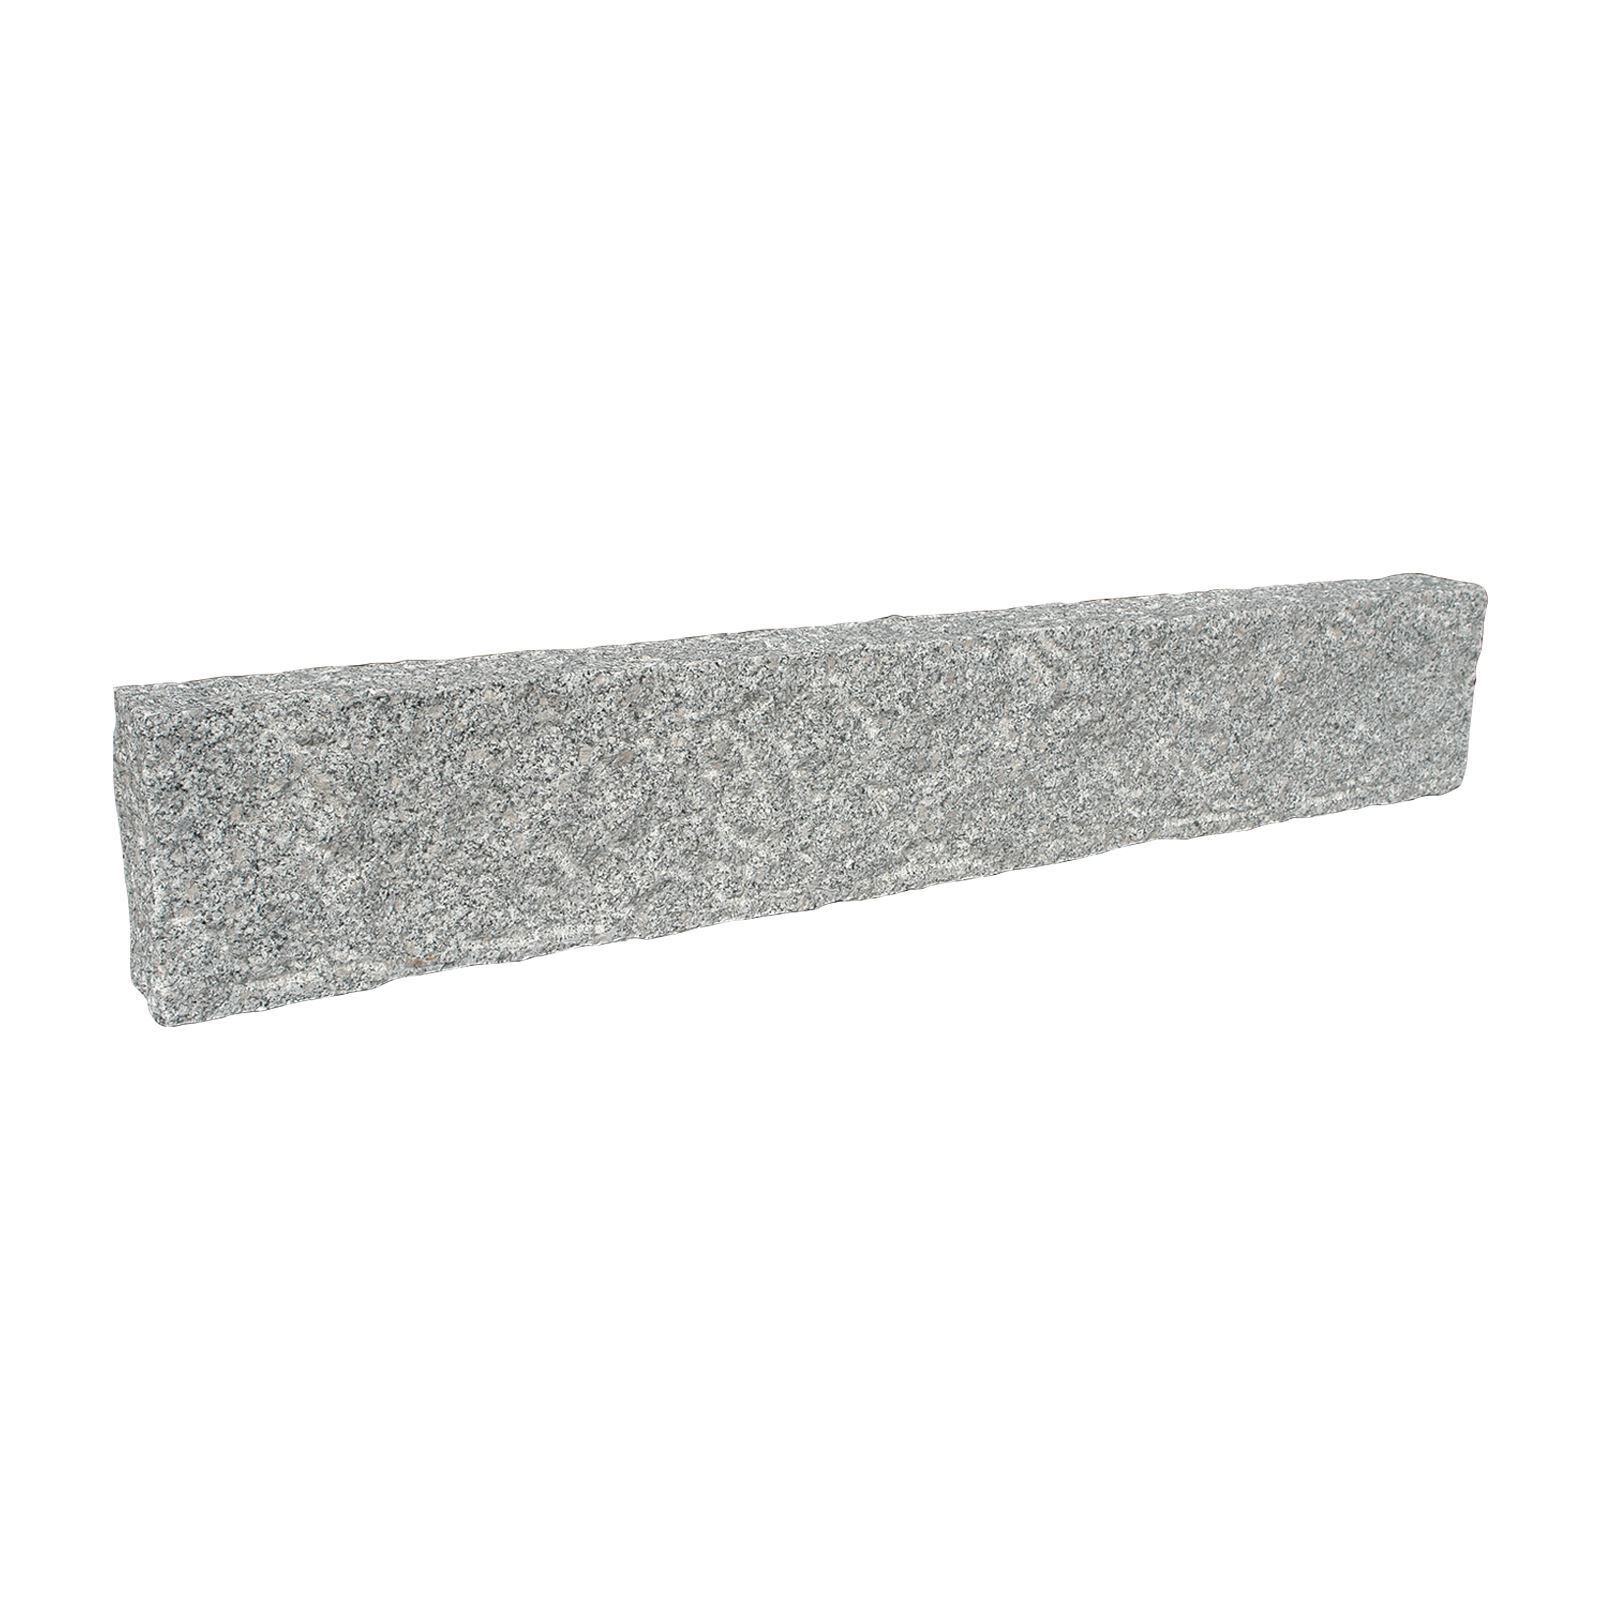 Granit-Stelen, grau, 10x25 cm, allseits gespitzt